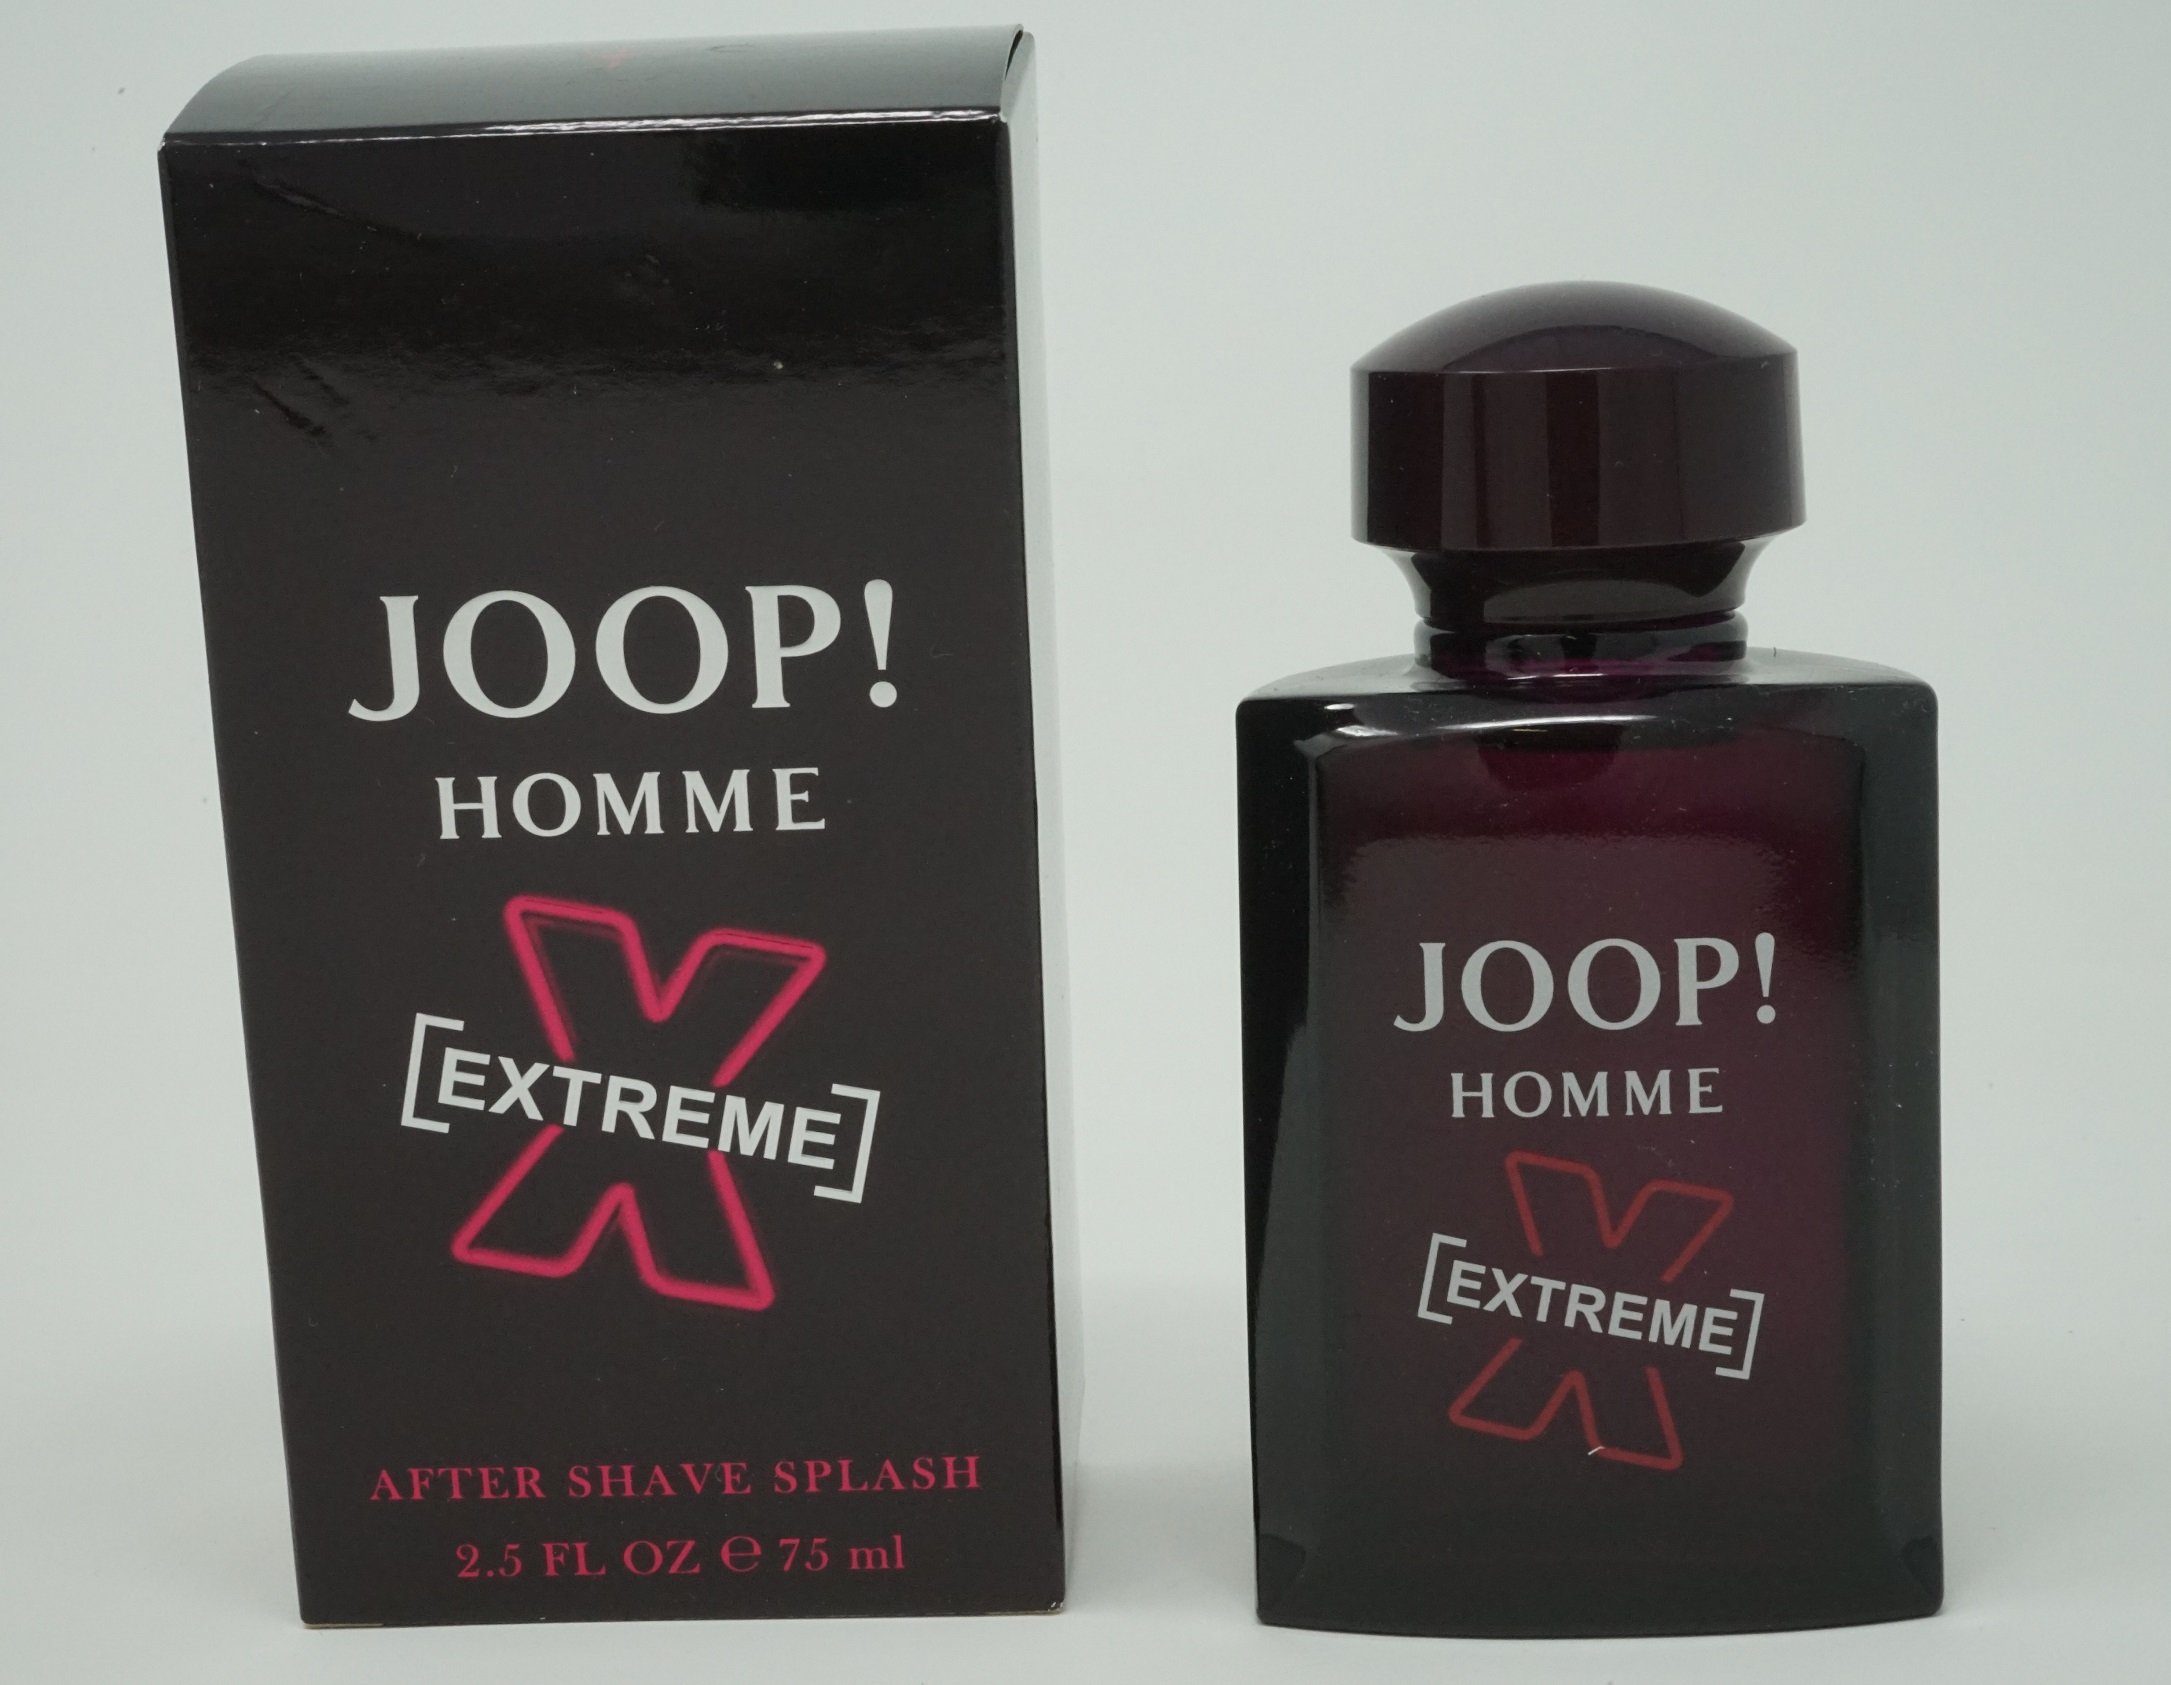 Homme Joop! After-Shave Shave JOOP Extreme After Splash 75ml